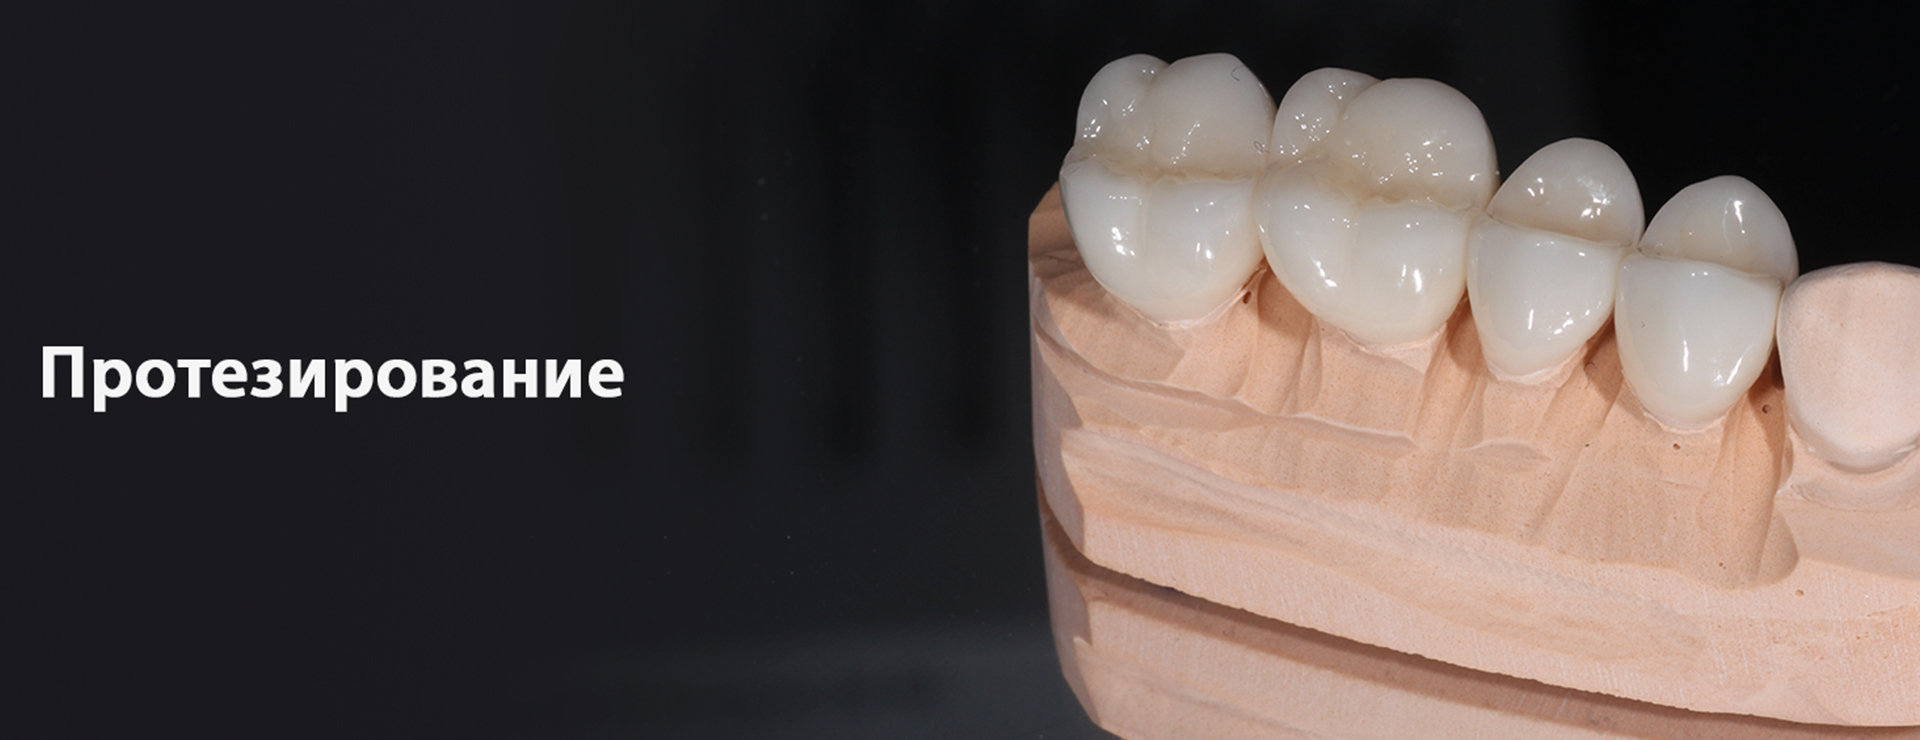 Что такое протезирование зубов